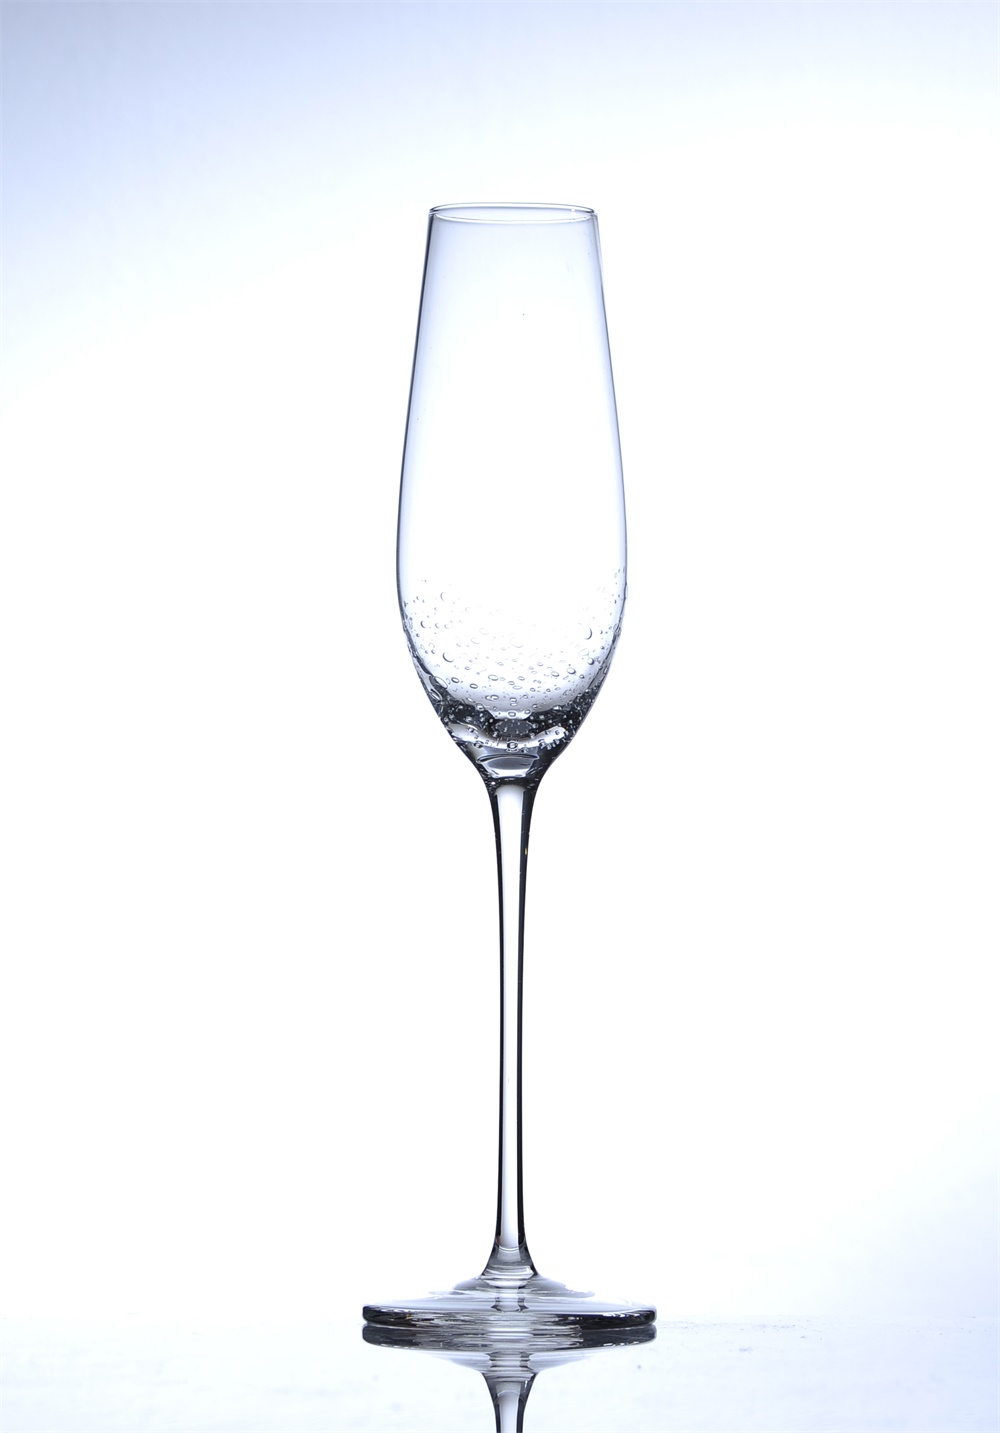 水珠水晶香槟杯厂家香槟杯价格厂家直销香槟酒杯图片